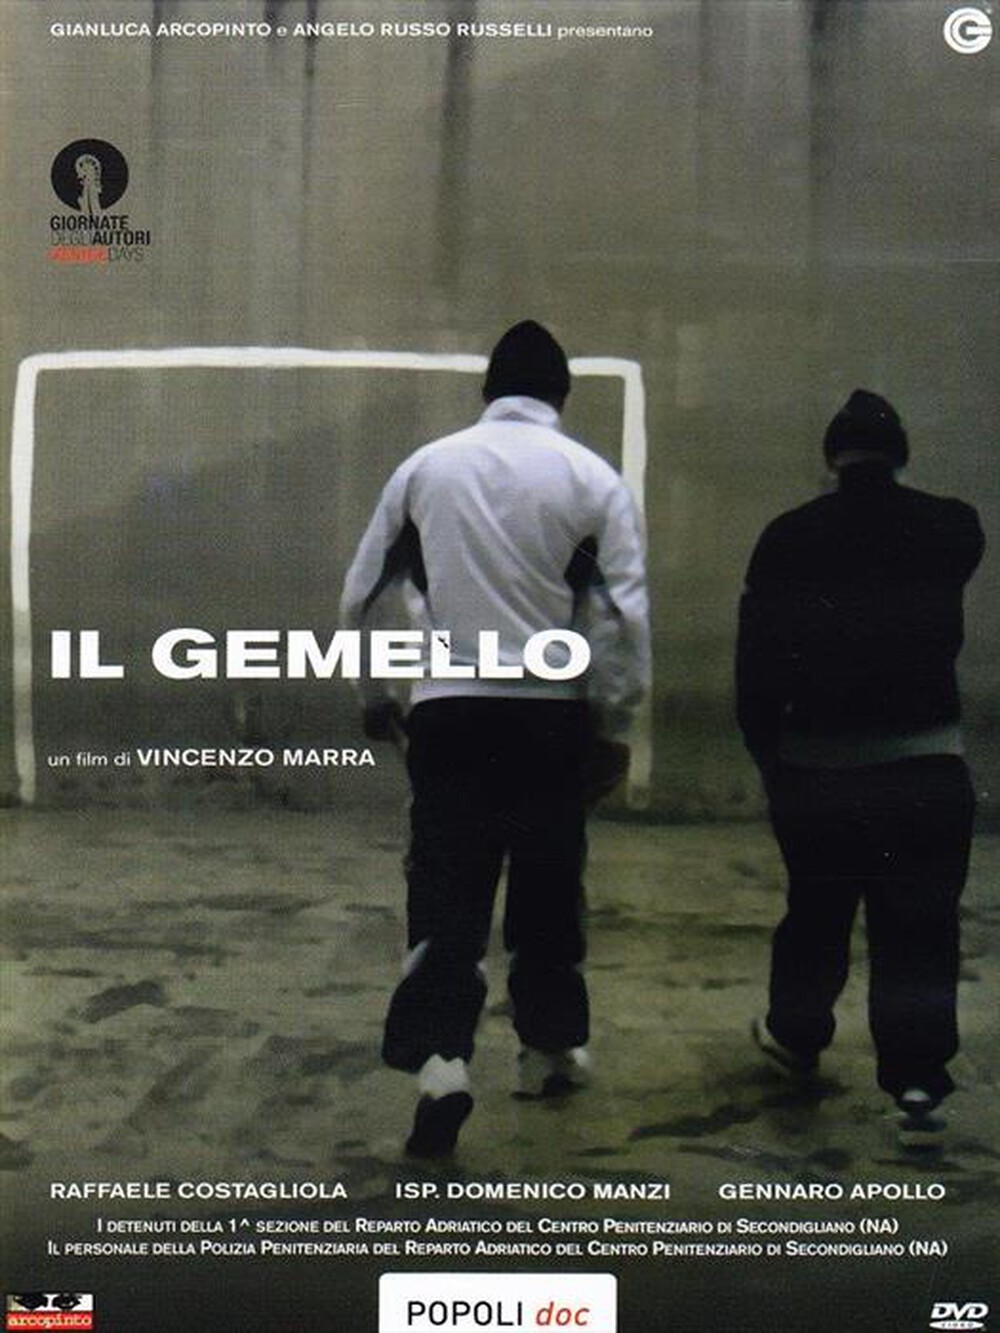 "CECCHI GORI - Gemello (Il)"